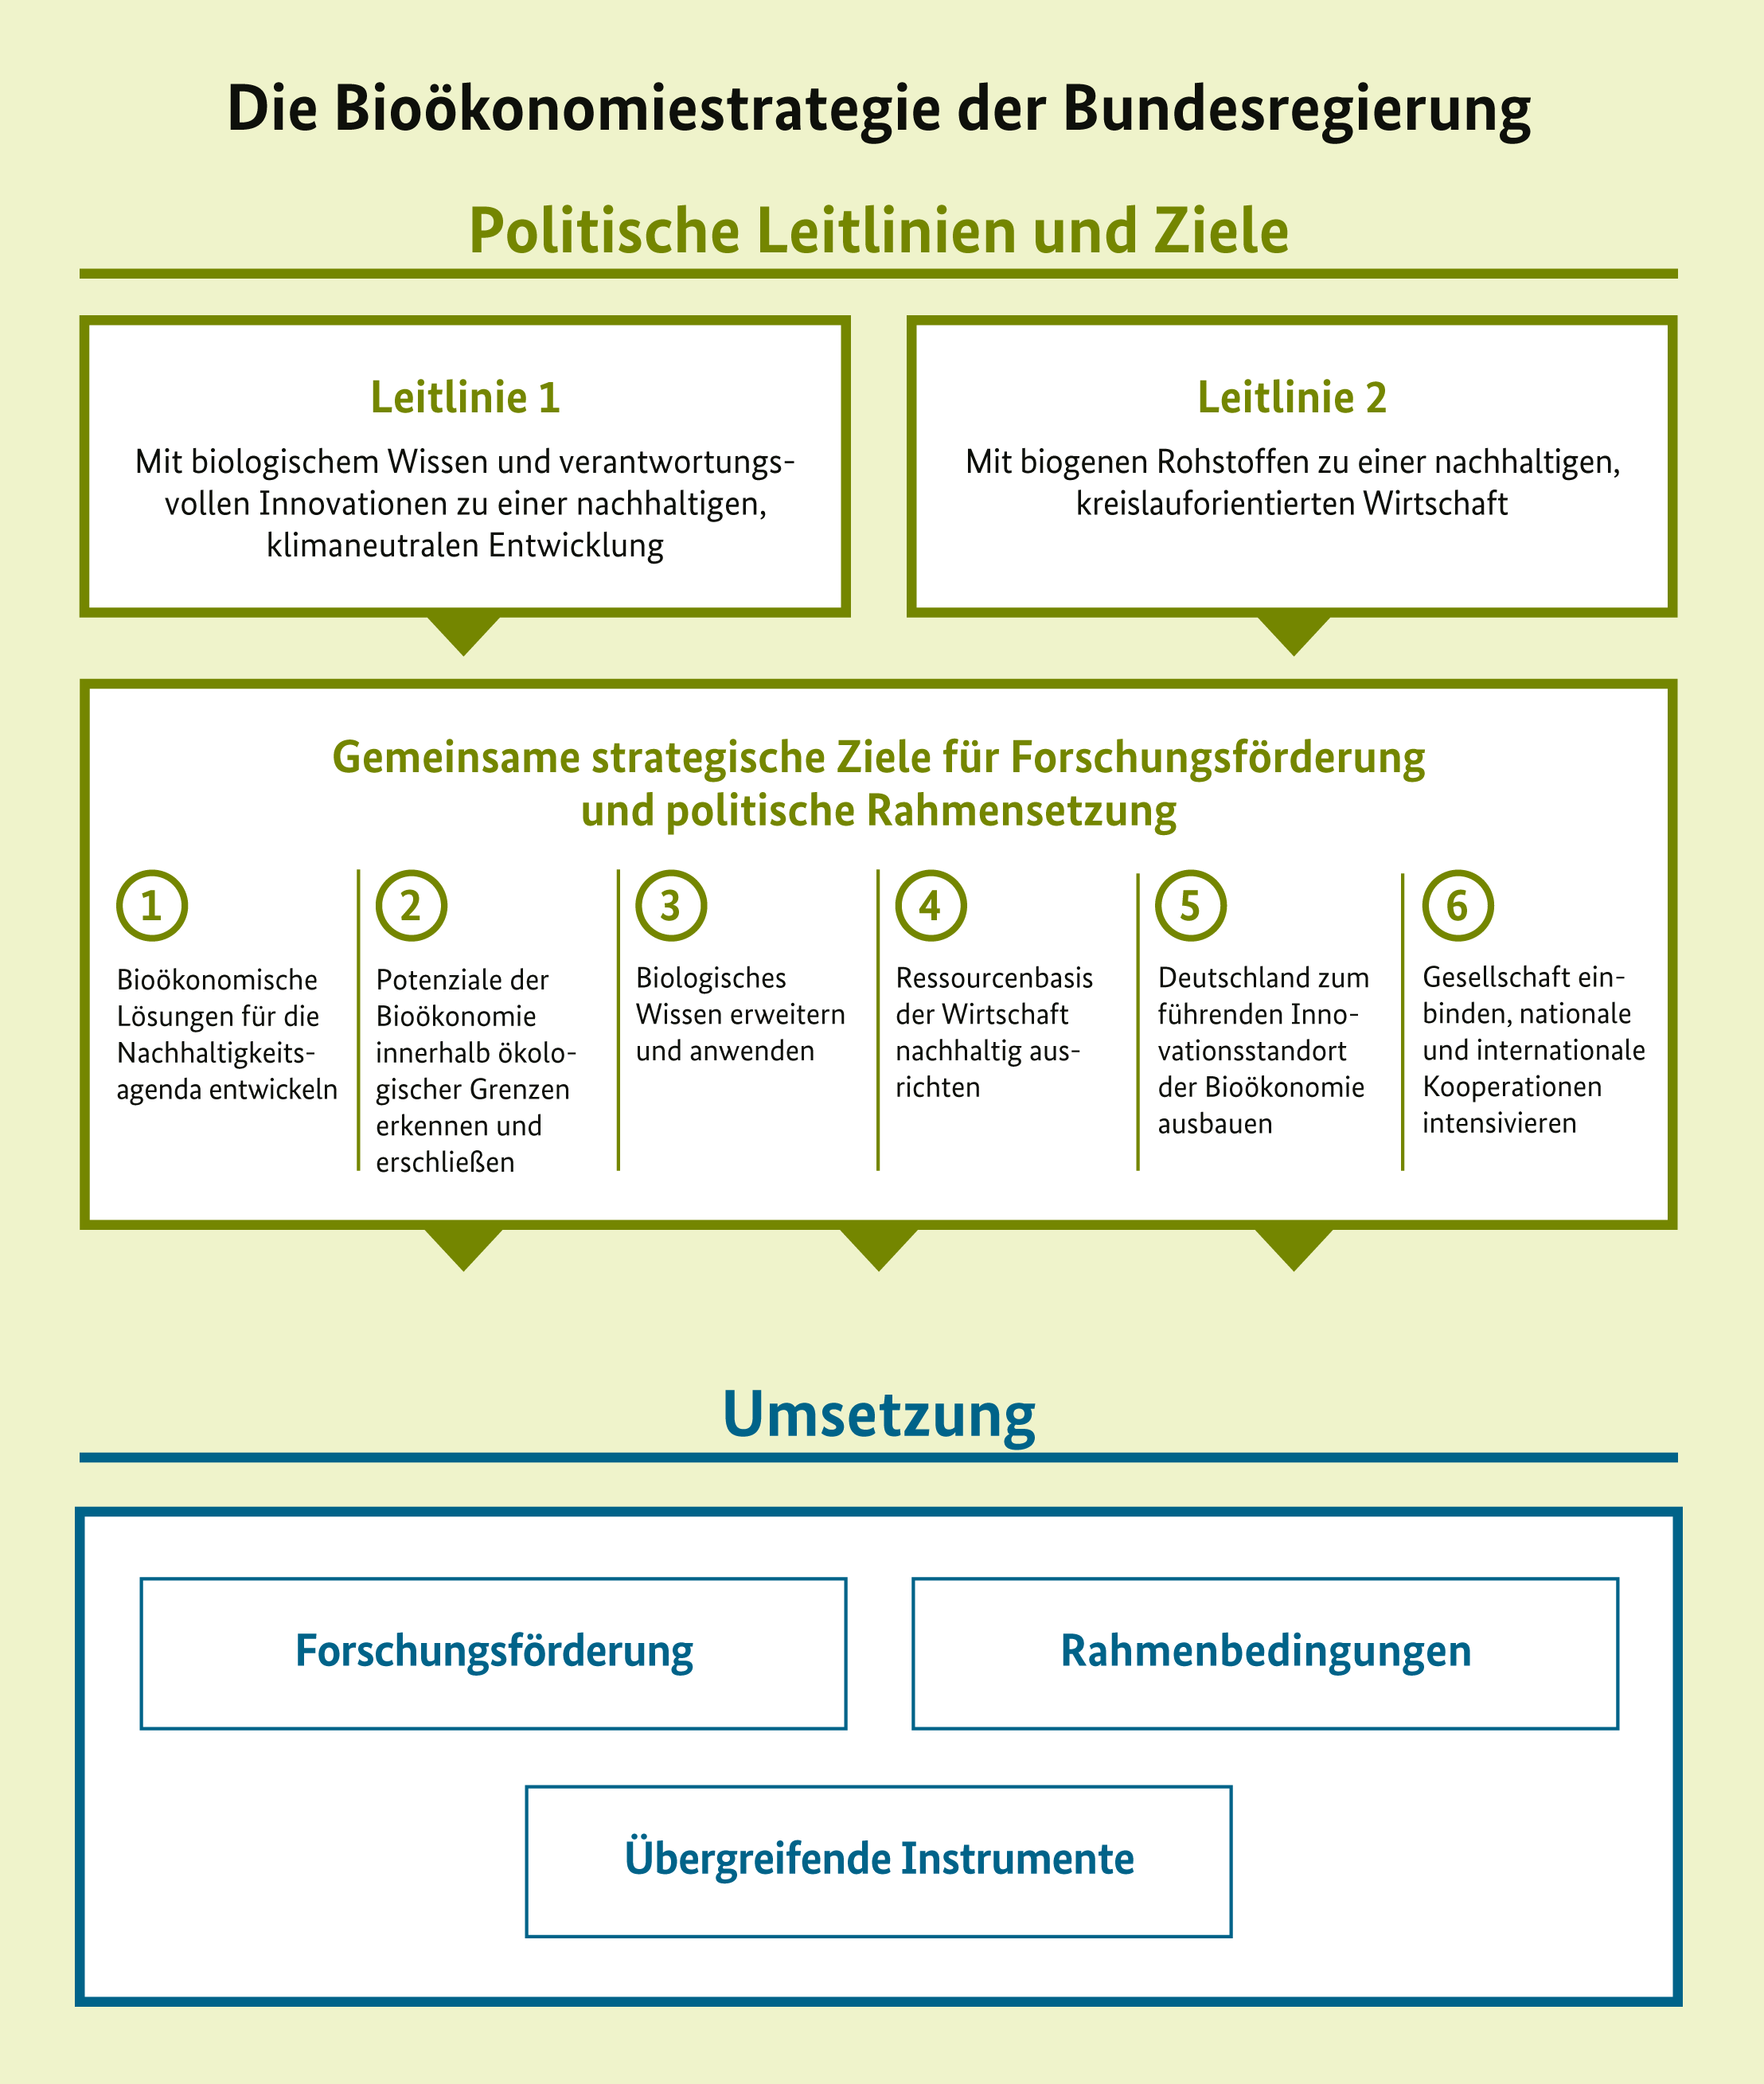 Grafik mit den politischen Leitlinien und Zielen der Bioökonomiestrategie sowie deren Umsetzung